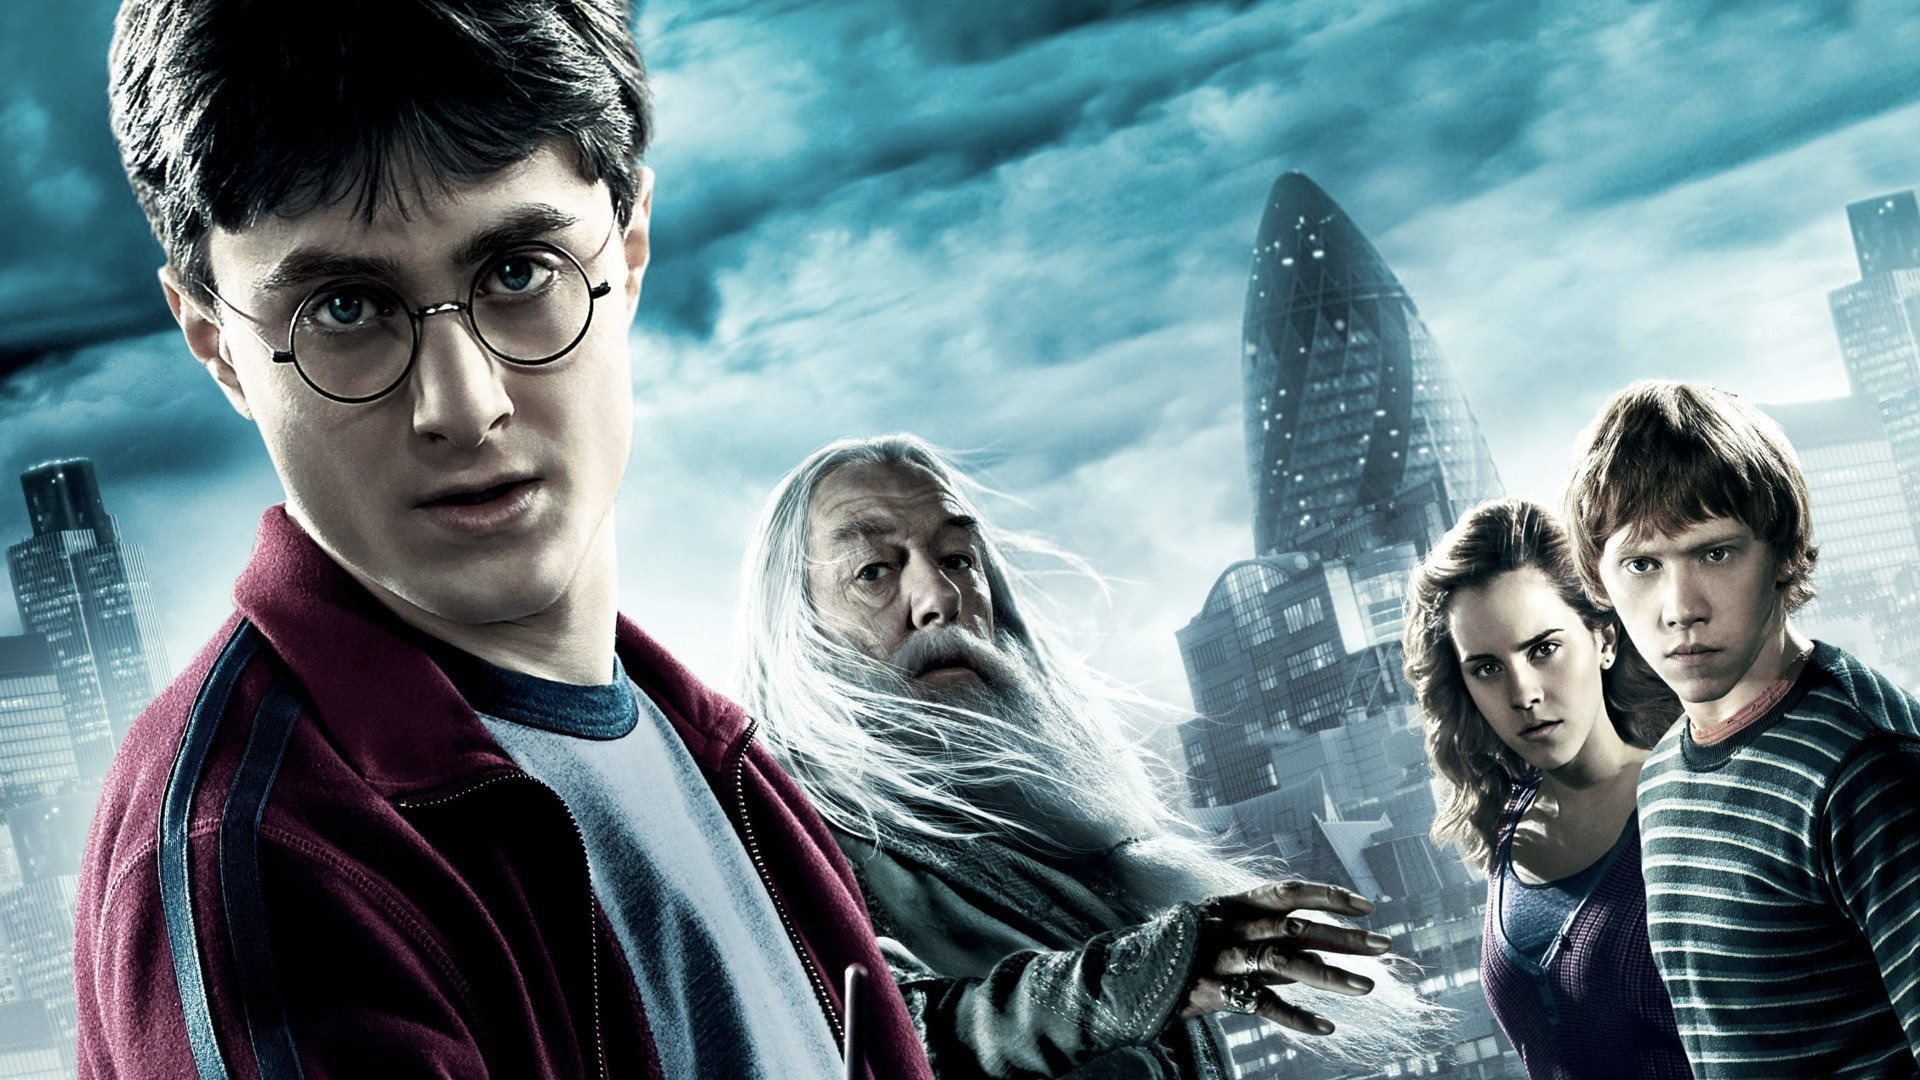 Harry Potter et le prince de sang-mêlé : un début différent par rapport